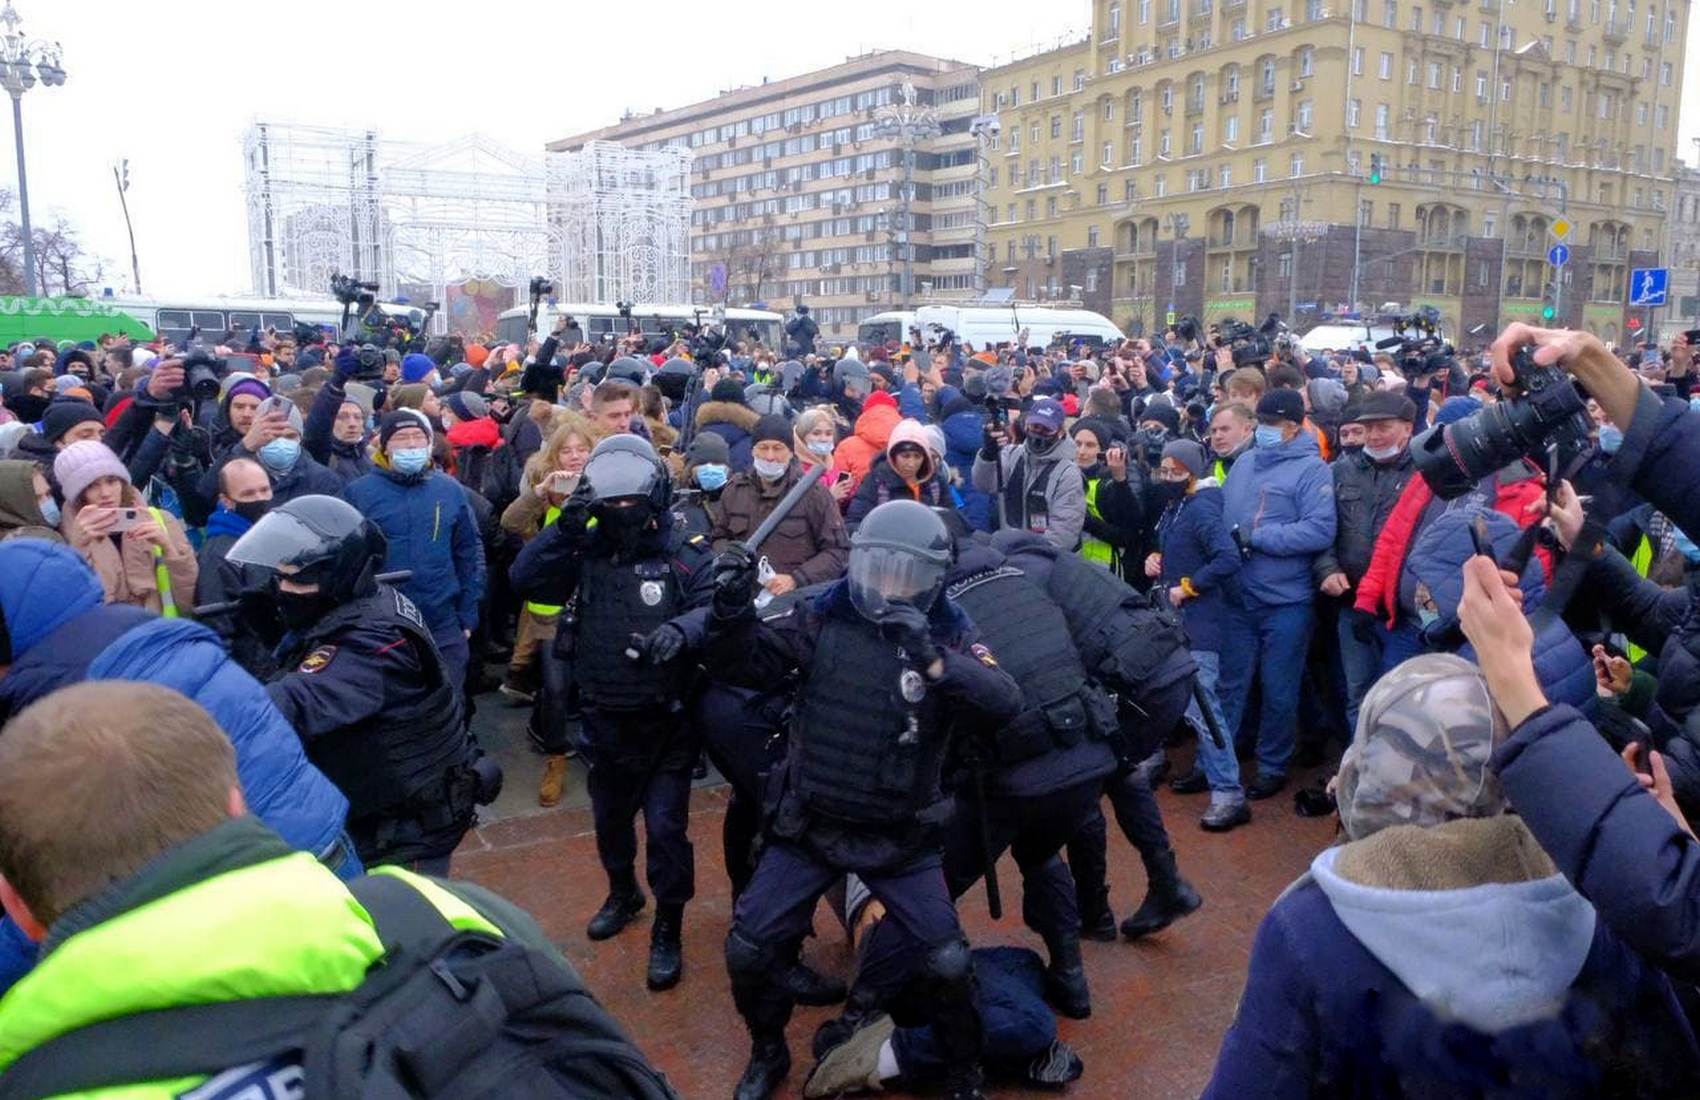 Сегодня свежие новости события что происходит. Митинг Навального 23 января 2021 Москва. Митинг Навального в Москве. Митинг 23 января Пушкинская площадь.